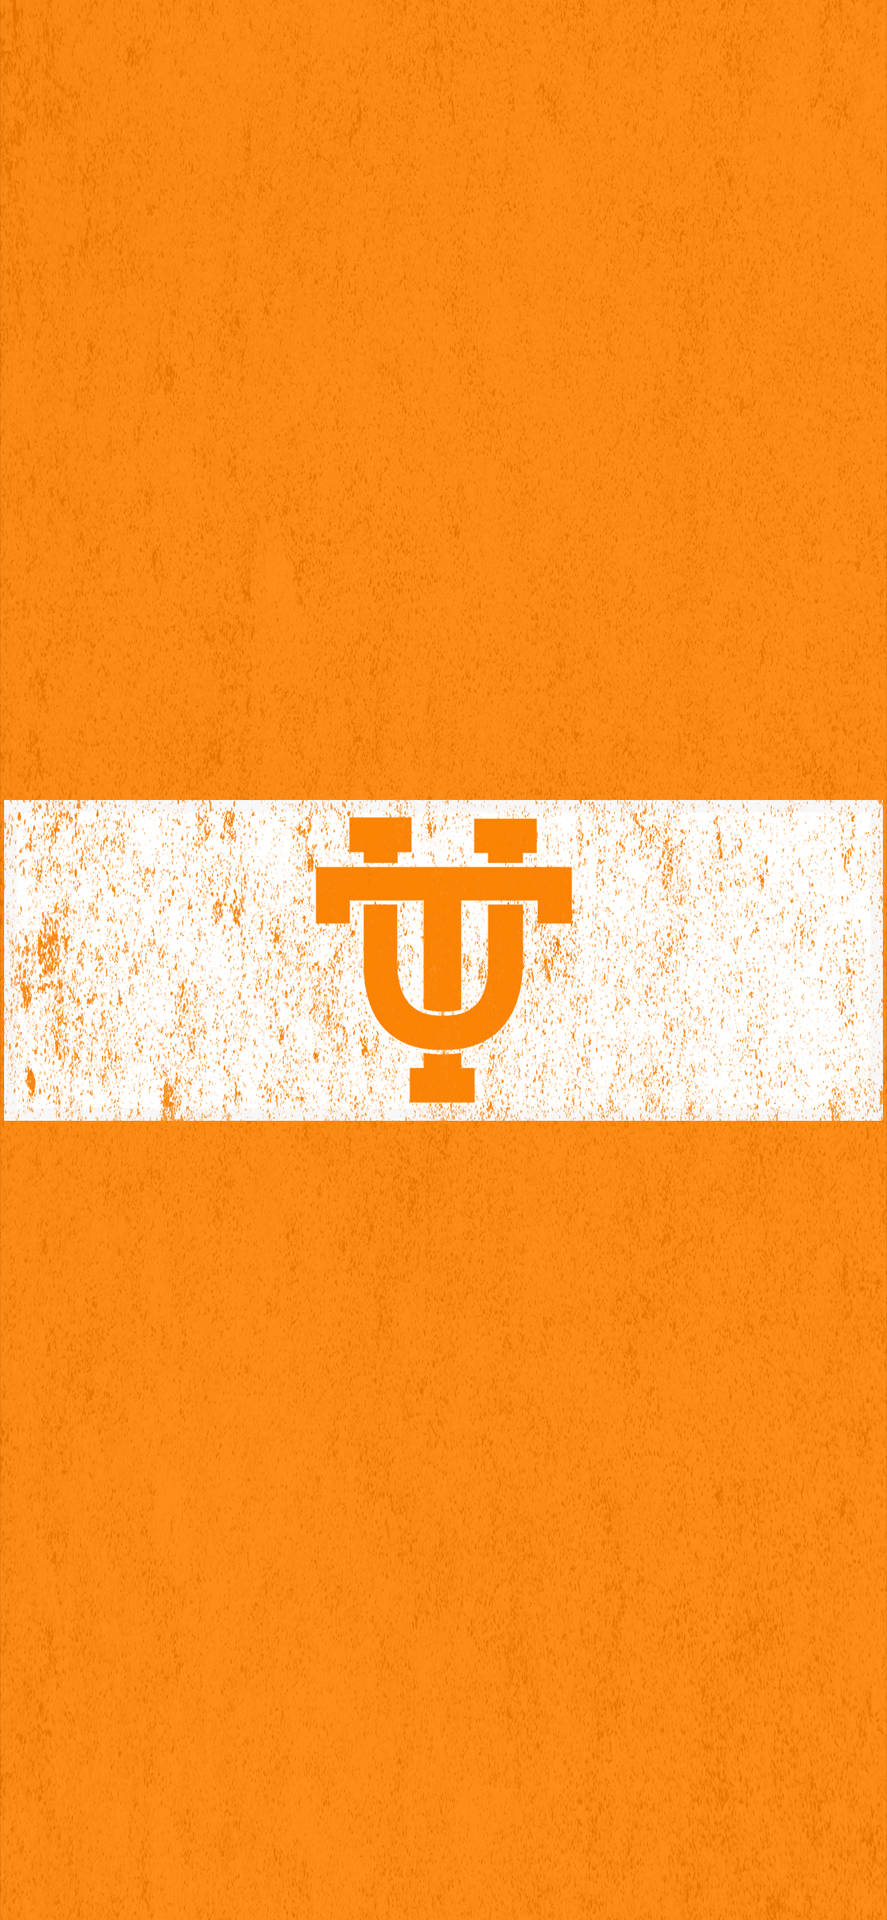 Logode La Universidad De Tennessee En Formato Vertical. Fondo de pantalla